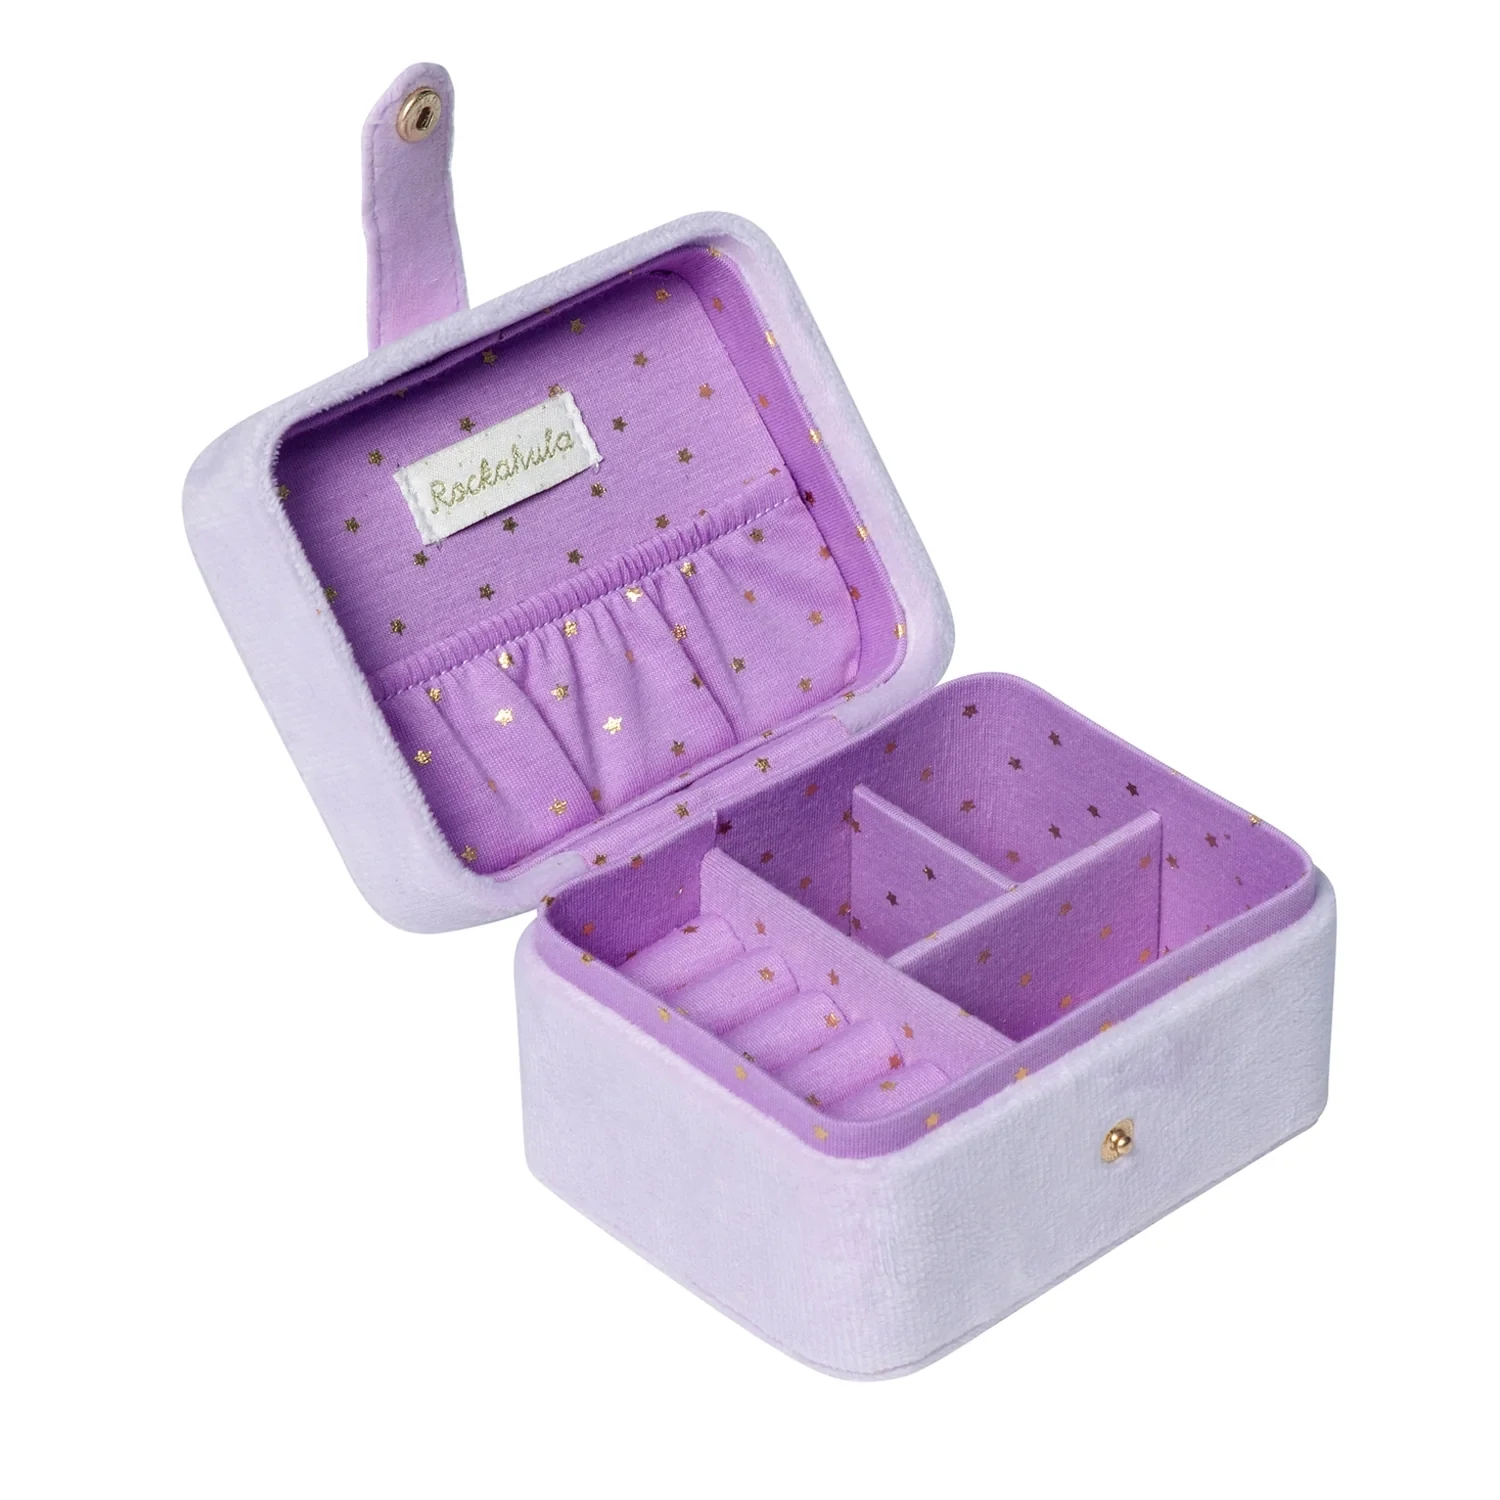 Rockahula Unicorn Jewelry Box 